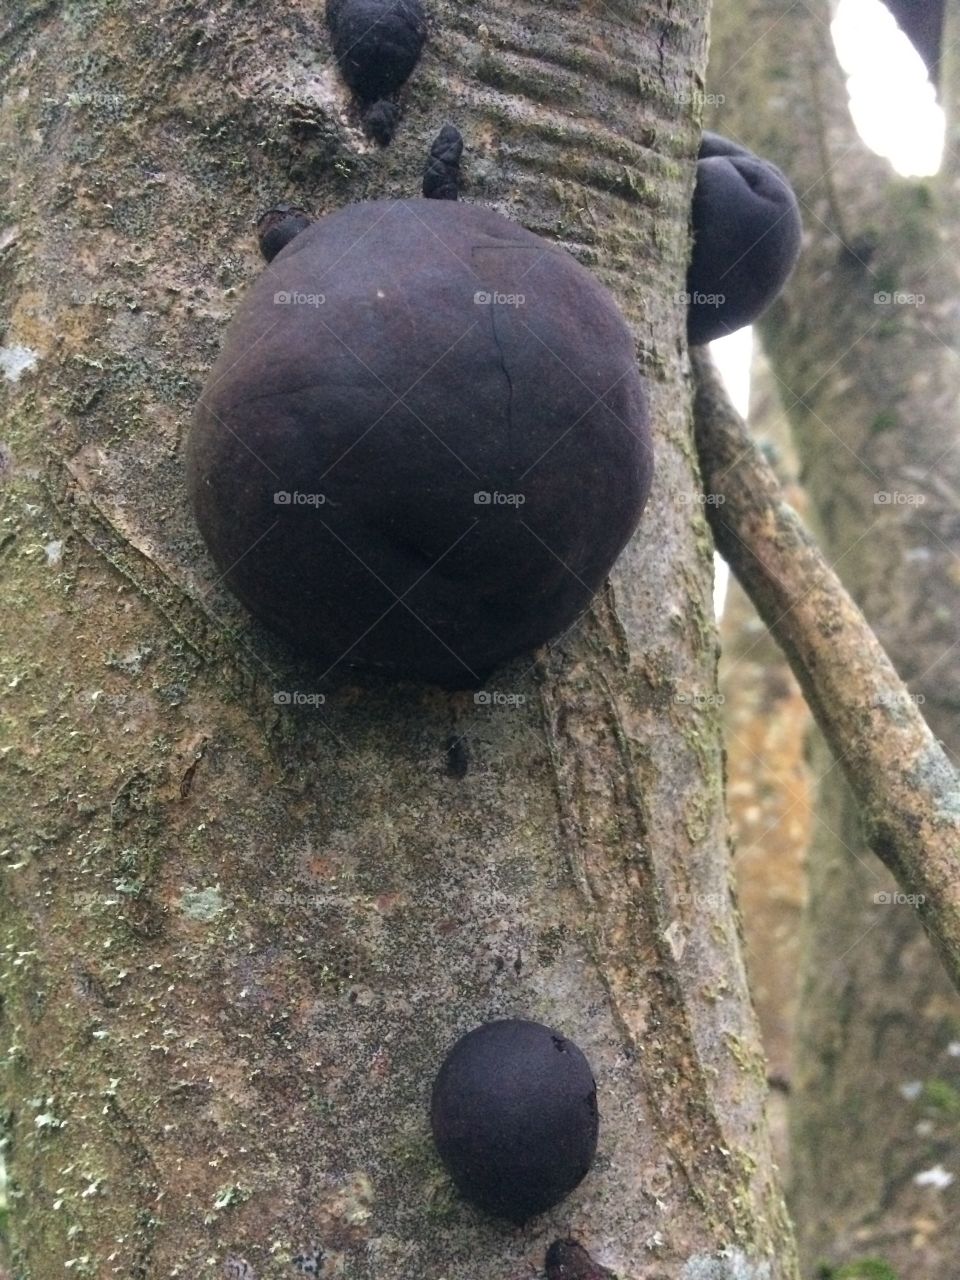 Globular fungus on a tree